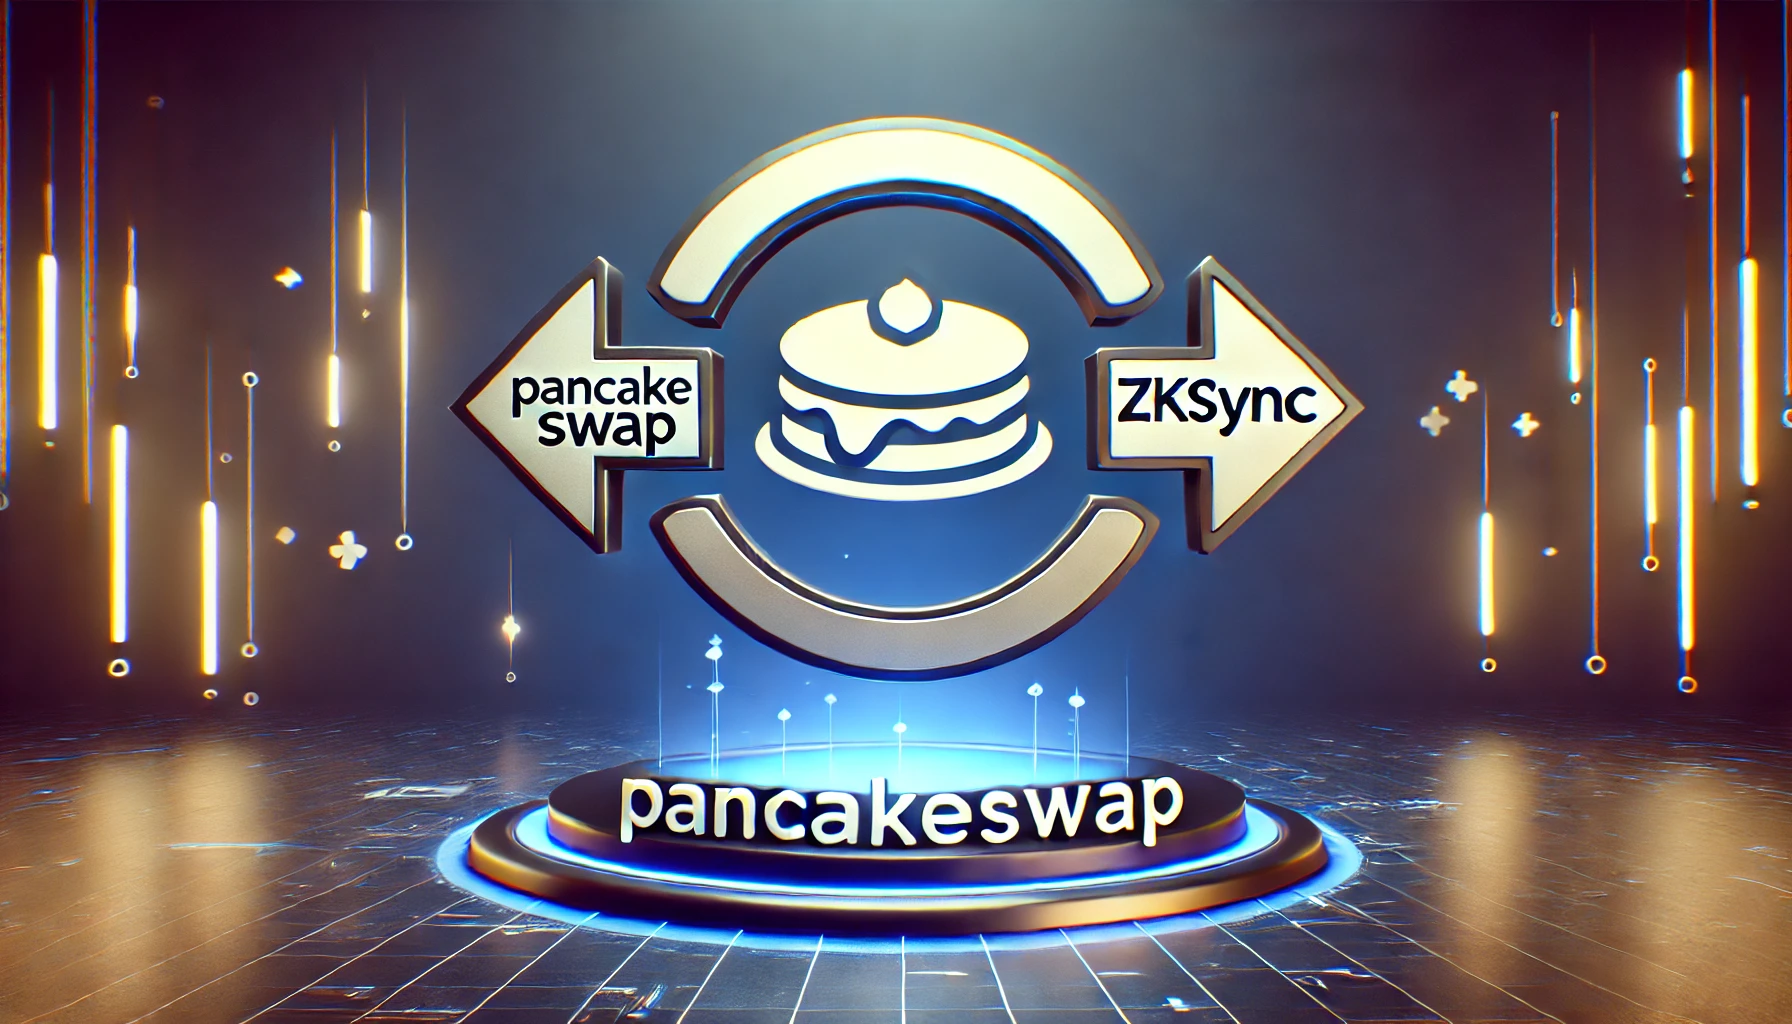 PancakeSwap otwiera roszczenie o 2,4 mln tokenów ZK, ponieważ zkSync zaprzecza biciu informacji poufnych